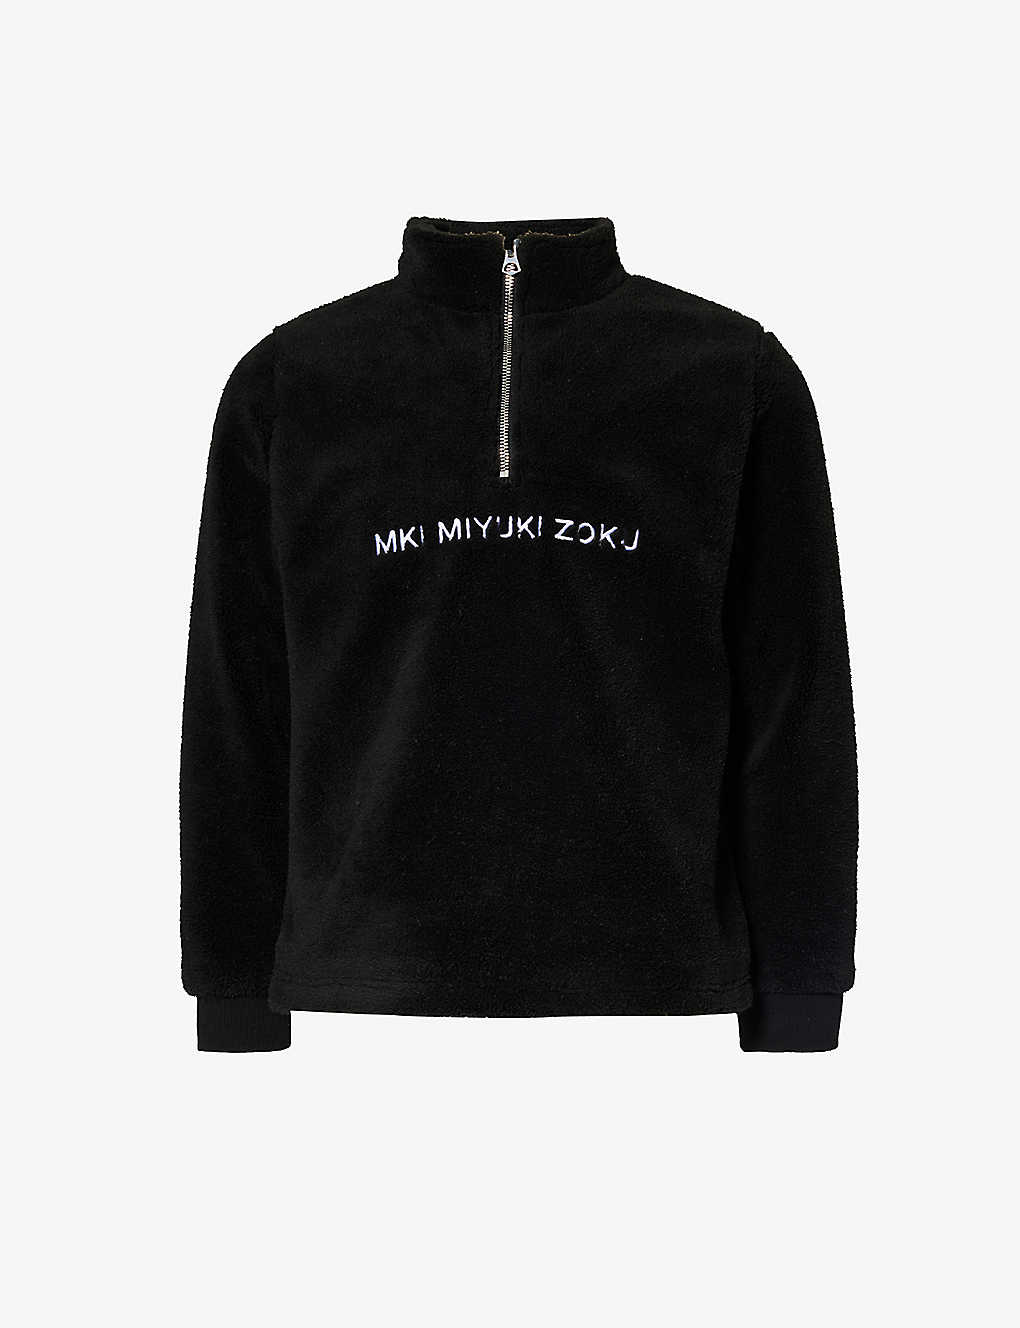 Mki Miyuki Zoku Mki Miyuki-zoku Mens Black V2 Brand-embroidered Fleece Sweatshirt